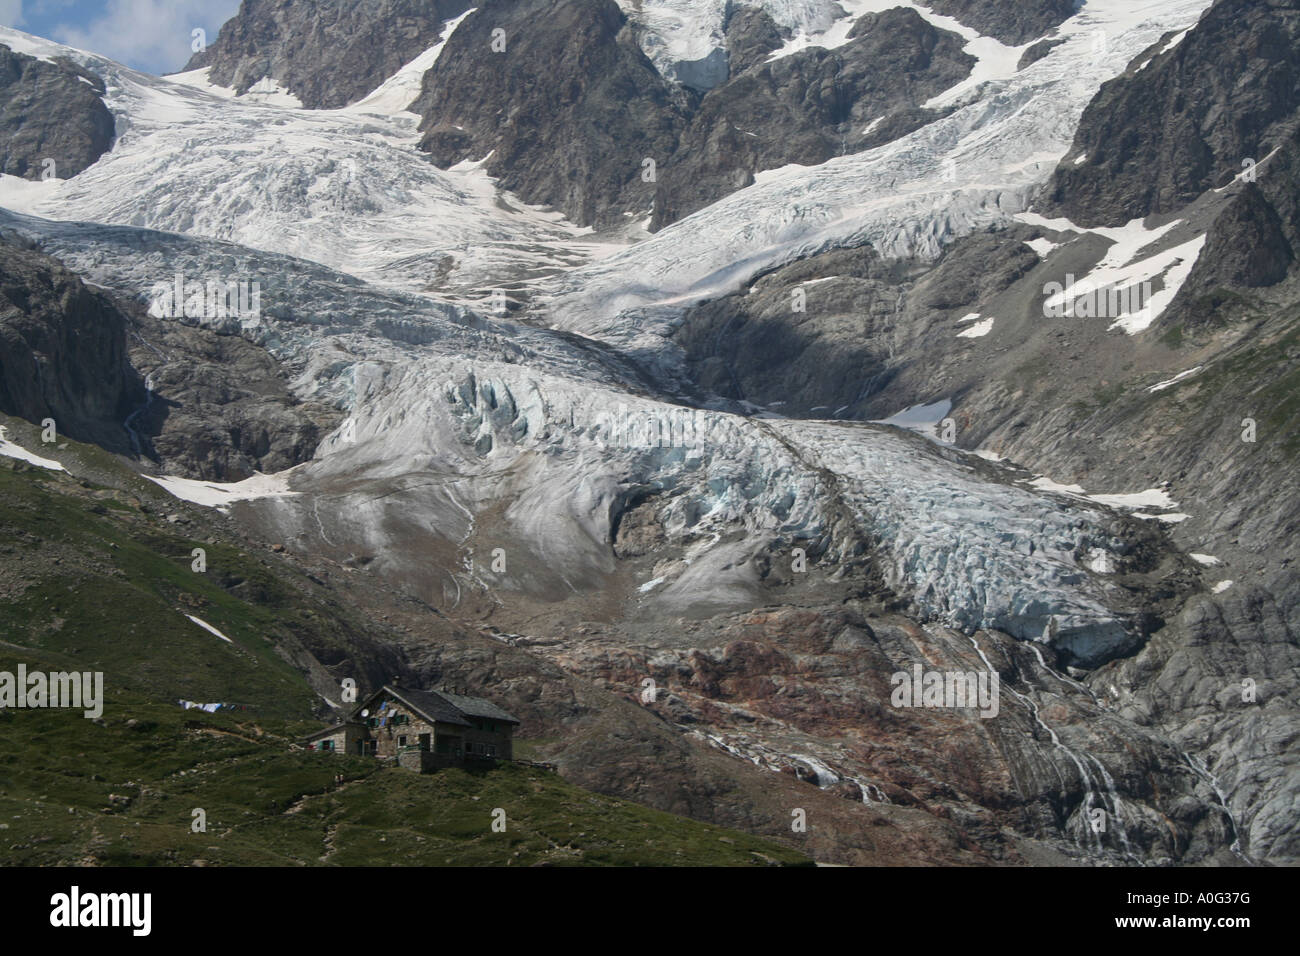 Rifugio Elisabetta Soldini hut below the Lex Blanche glacier near Mont Blanc, Italian Alps Stock Photo